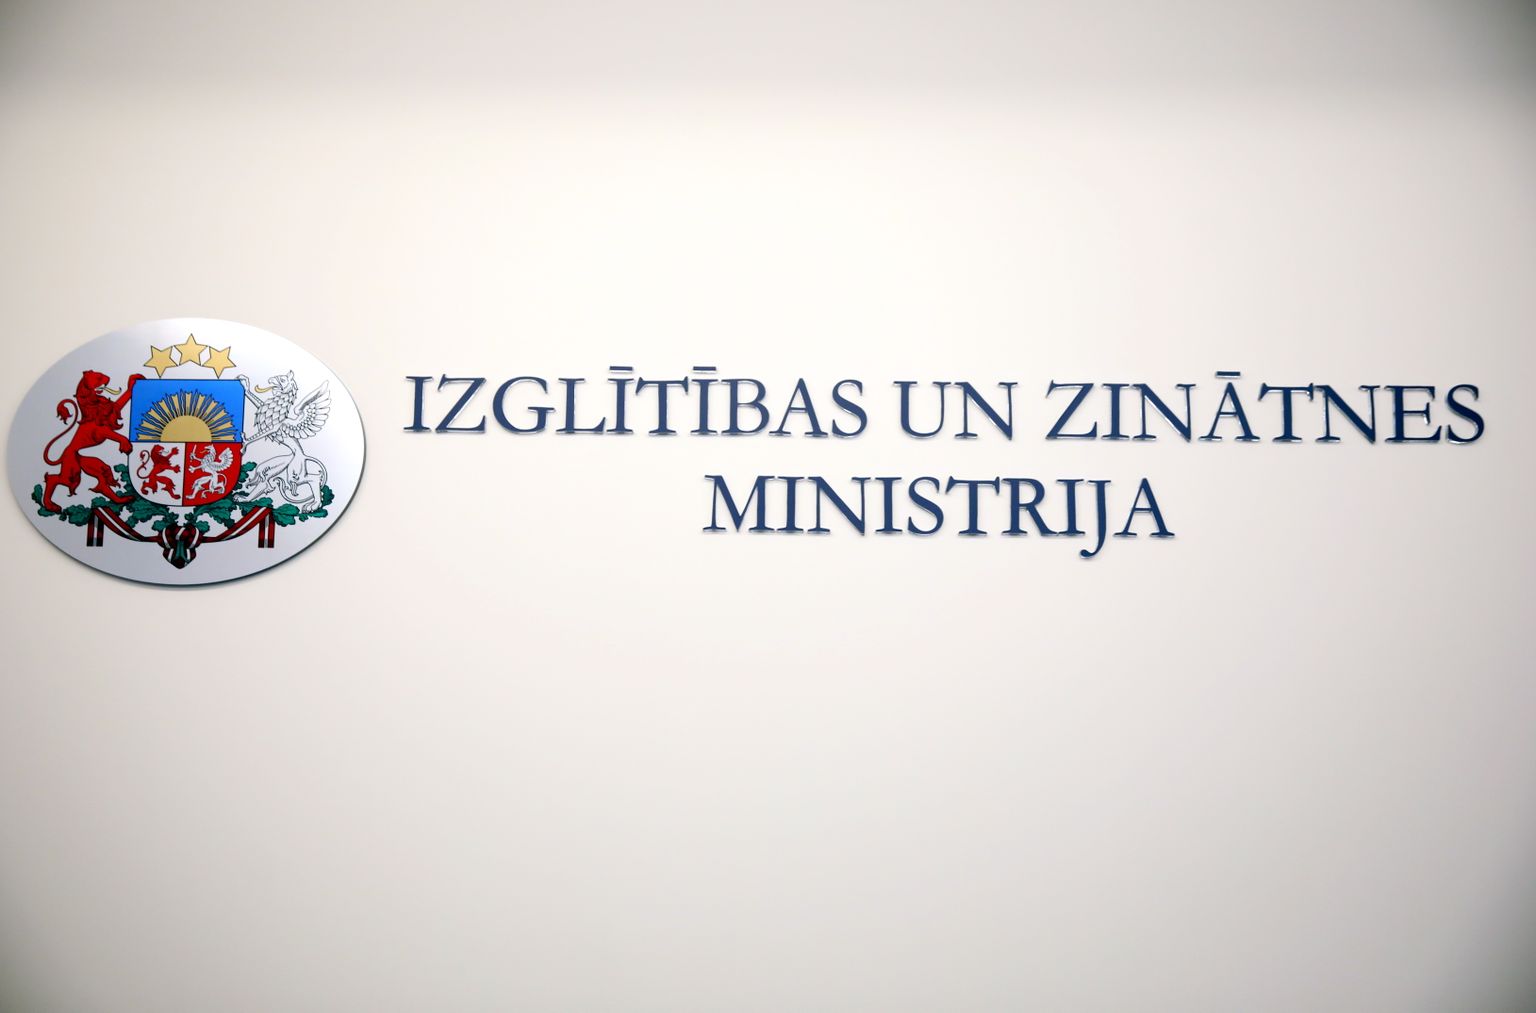 Izglītības un zinātnes ministrijas logo.